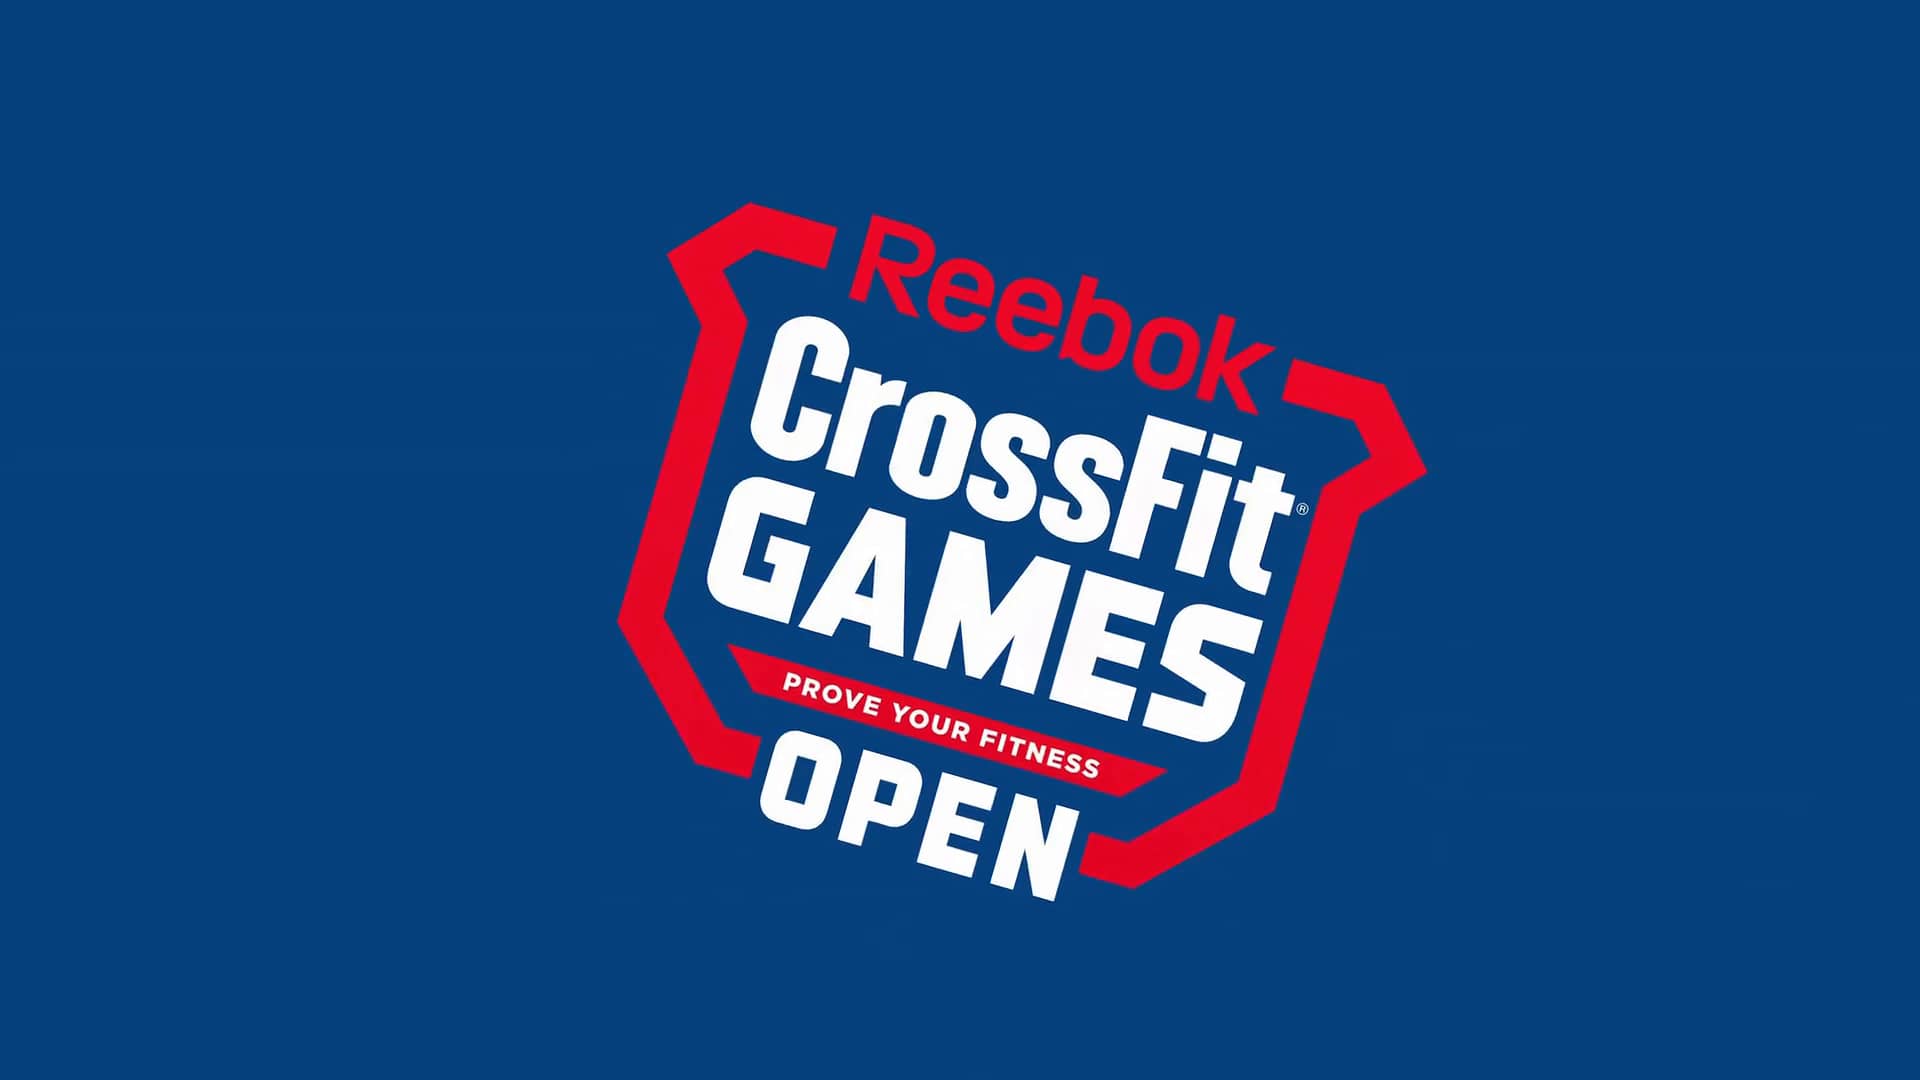 reebok crossfit games entry